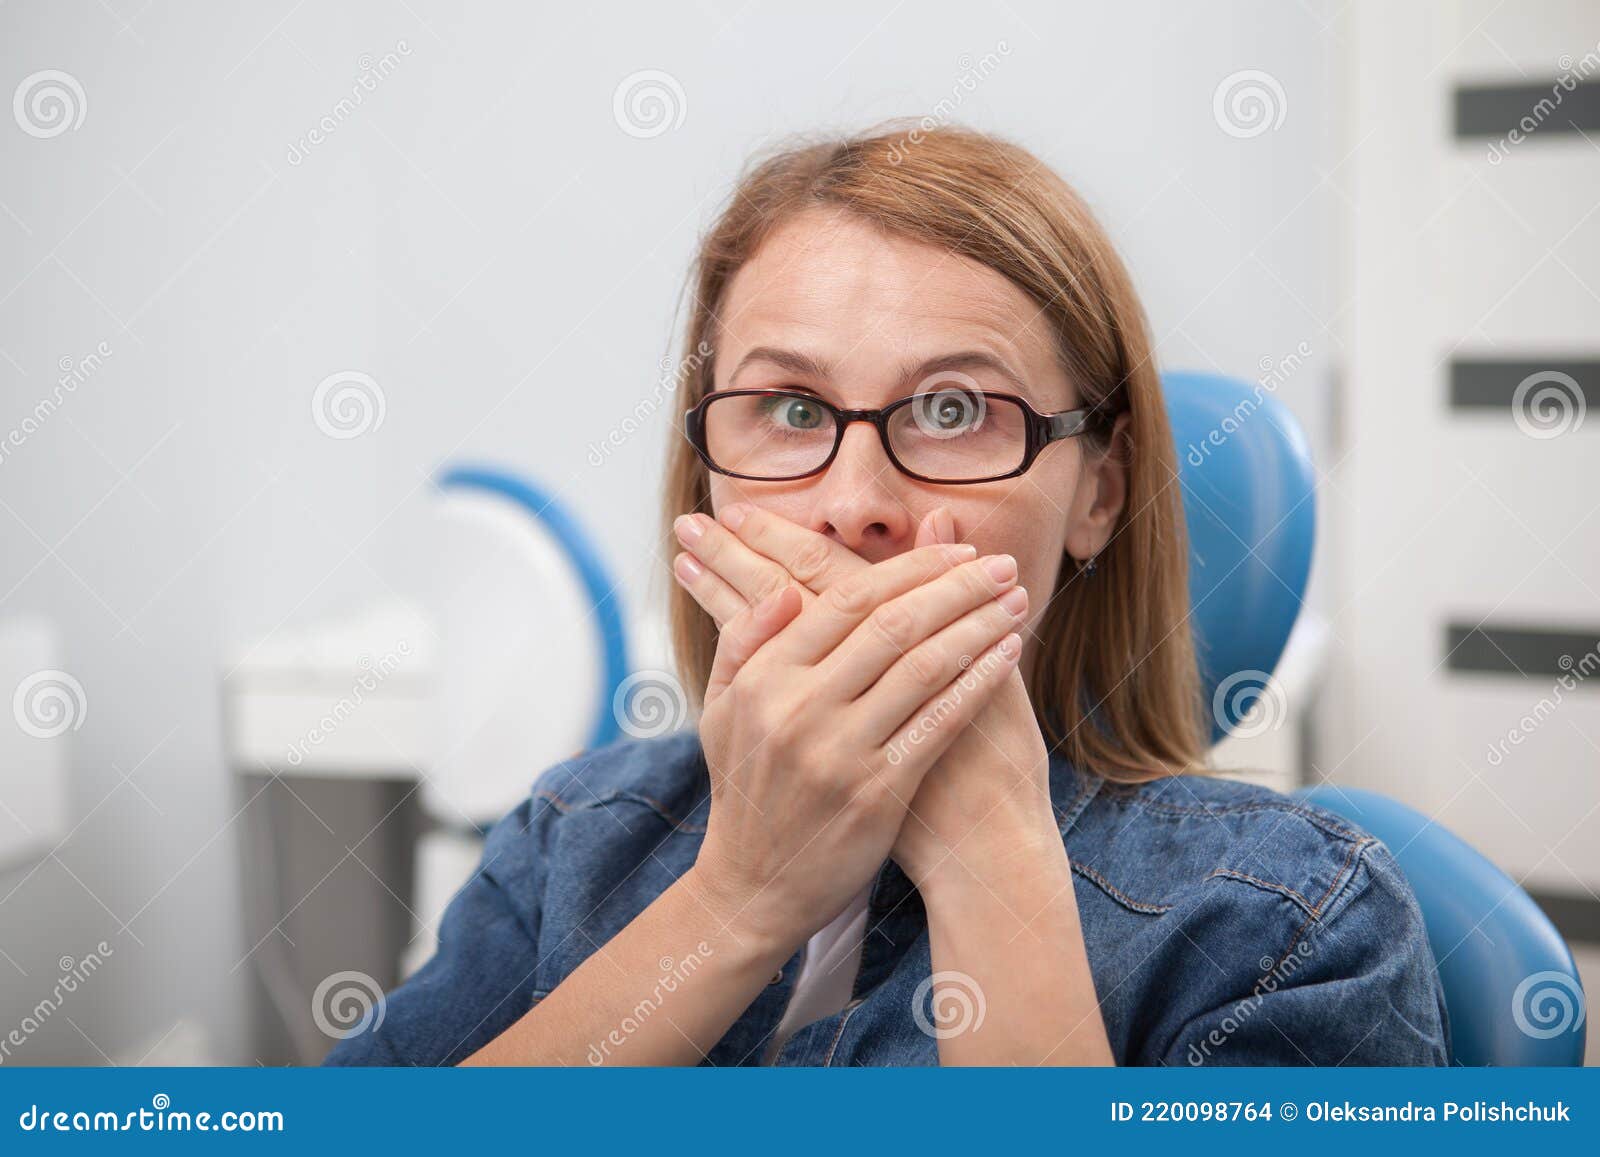 在牙医诊所关闭她嘴的惊吓病人肖像 牙医护理 库存图片. 图片 包括有 女性, 牙科医生, 辅助, 核对 - 160635101